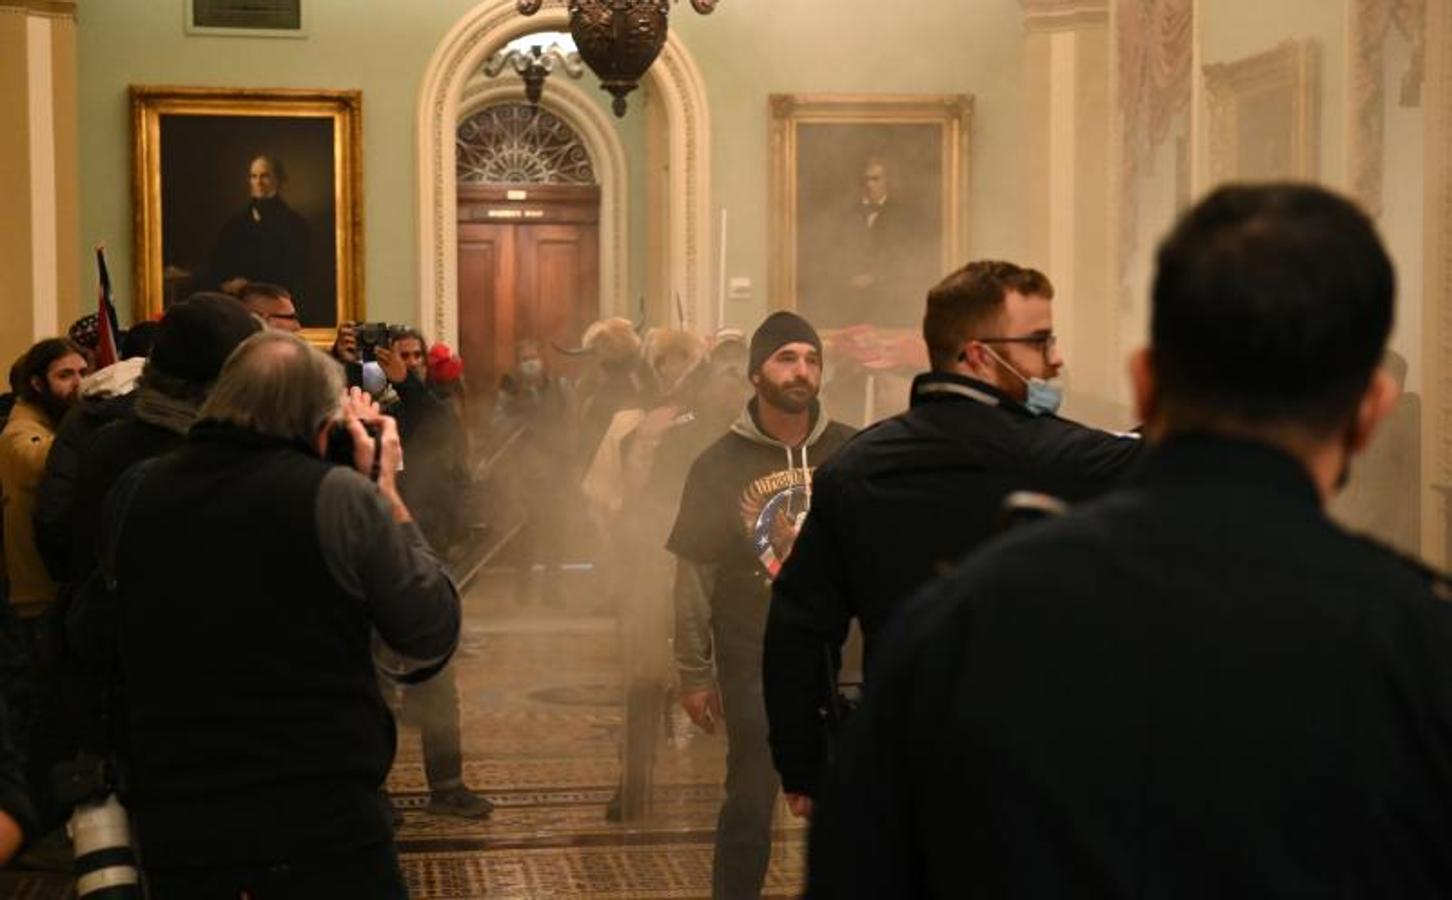 Los partidarios del presidente de los Estados Unidos, Donald Trump, ingresan al Capitolio de los Estados Unidos mientras el humo llena el corredor.